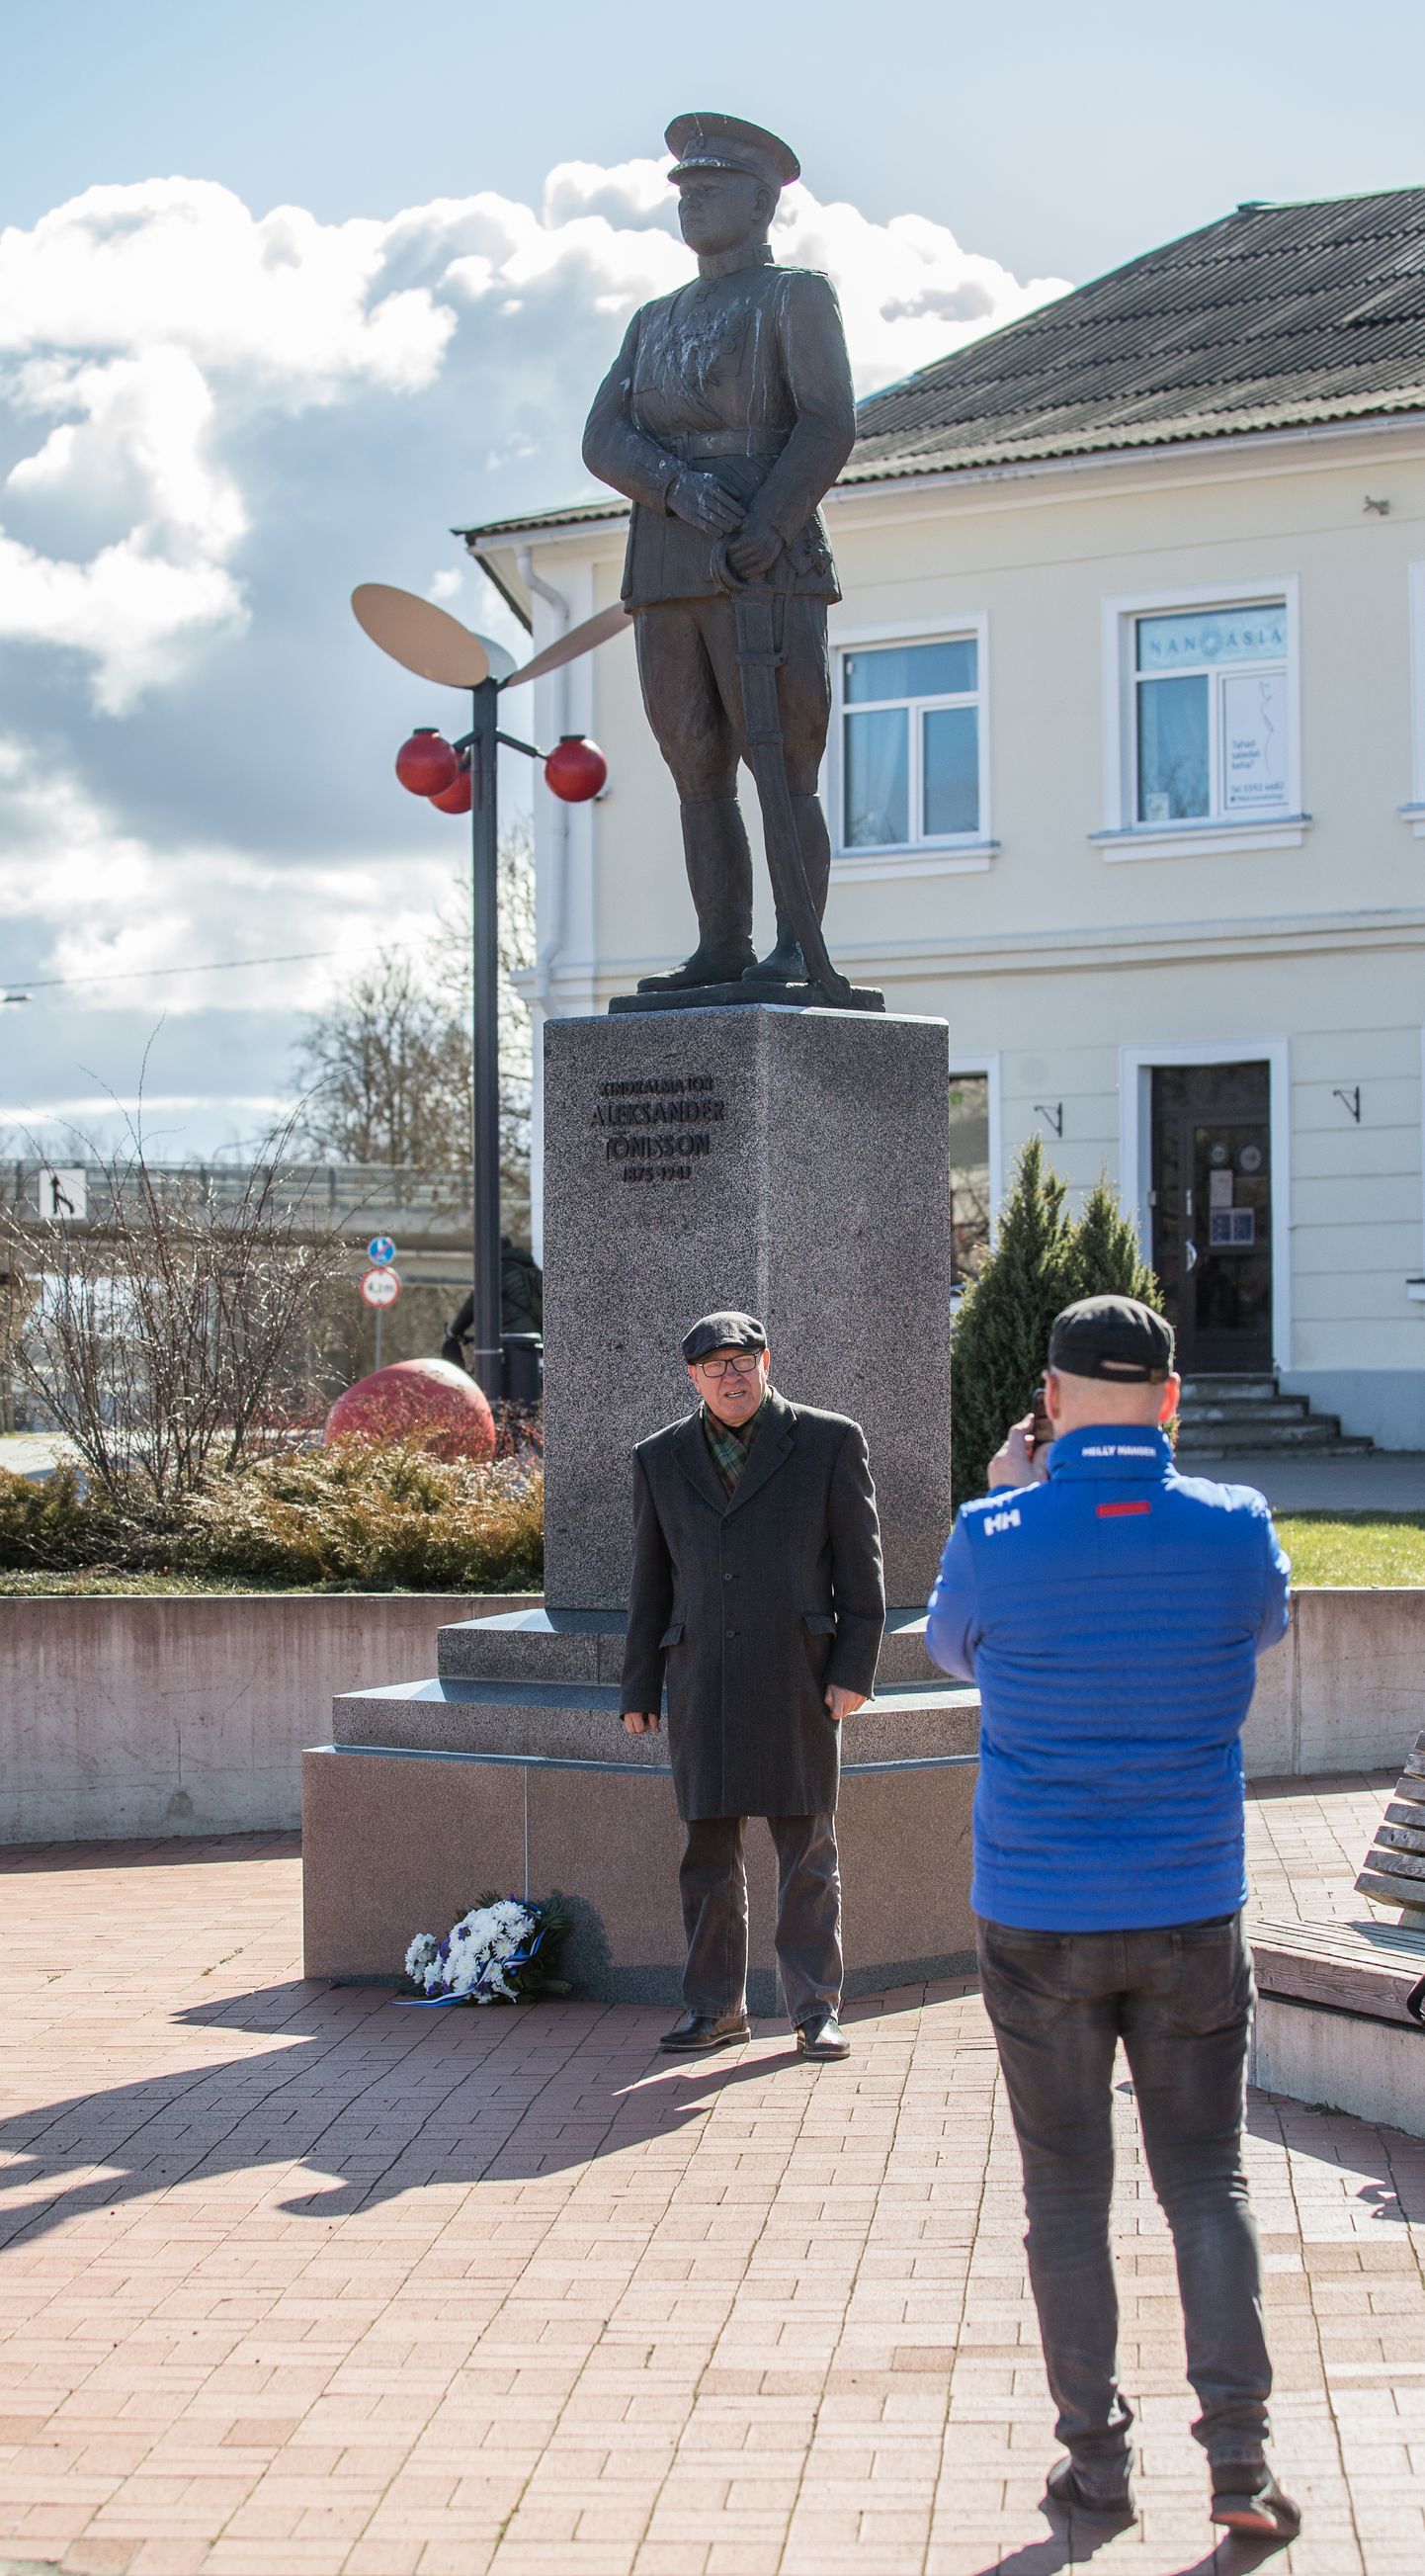 Конференция посвящена 145-летию со дня рождения генерал-майора Александера Тыниссона. В 2005 году в порядке гражданской инициативы ему установили памятник на центральной площади Йыхви.